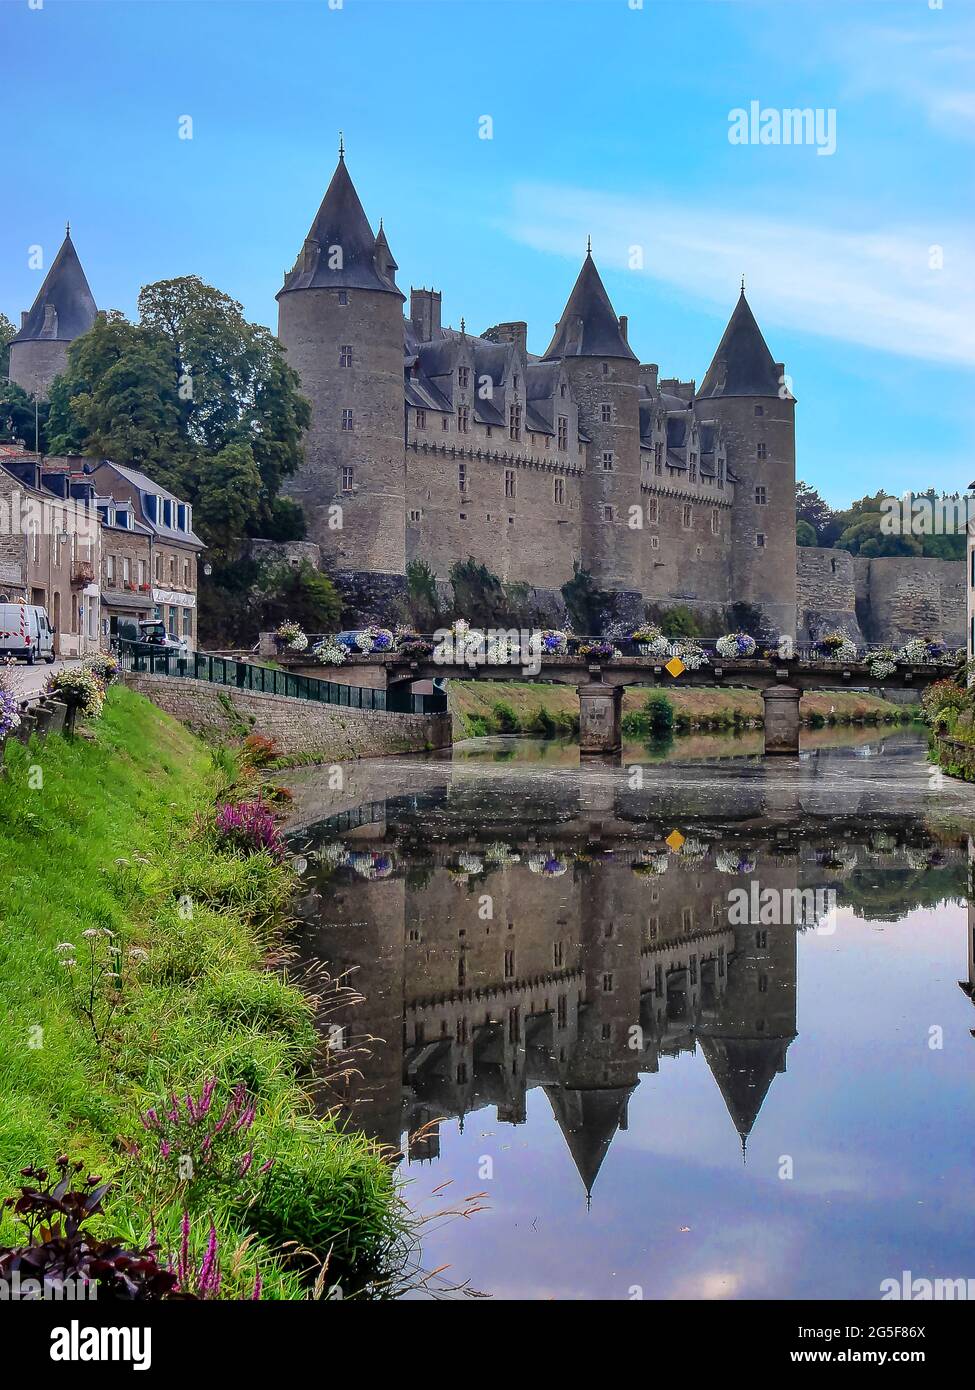 El castillo de Josselin es un castillo francés de origen medieval que se encuentra ubicado en la ciudad de Josselin Stock Photo